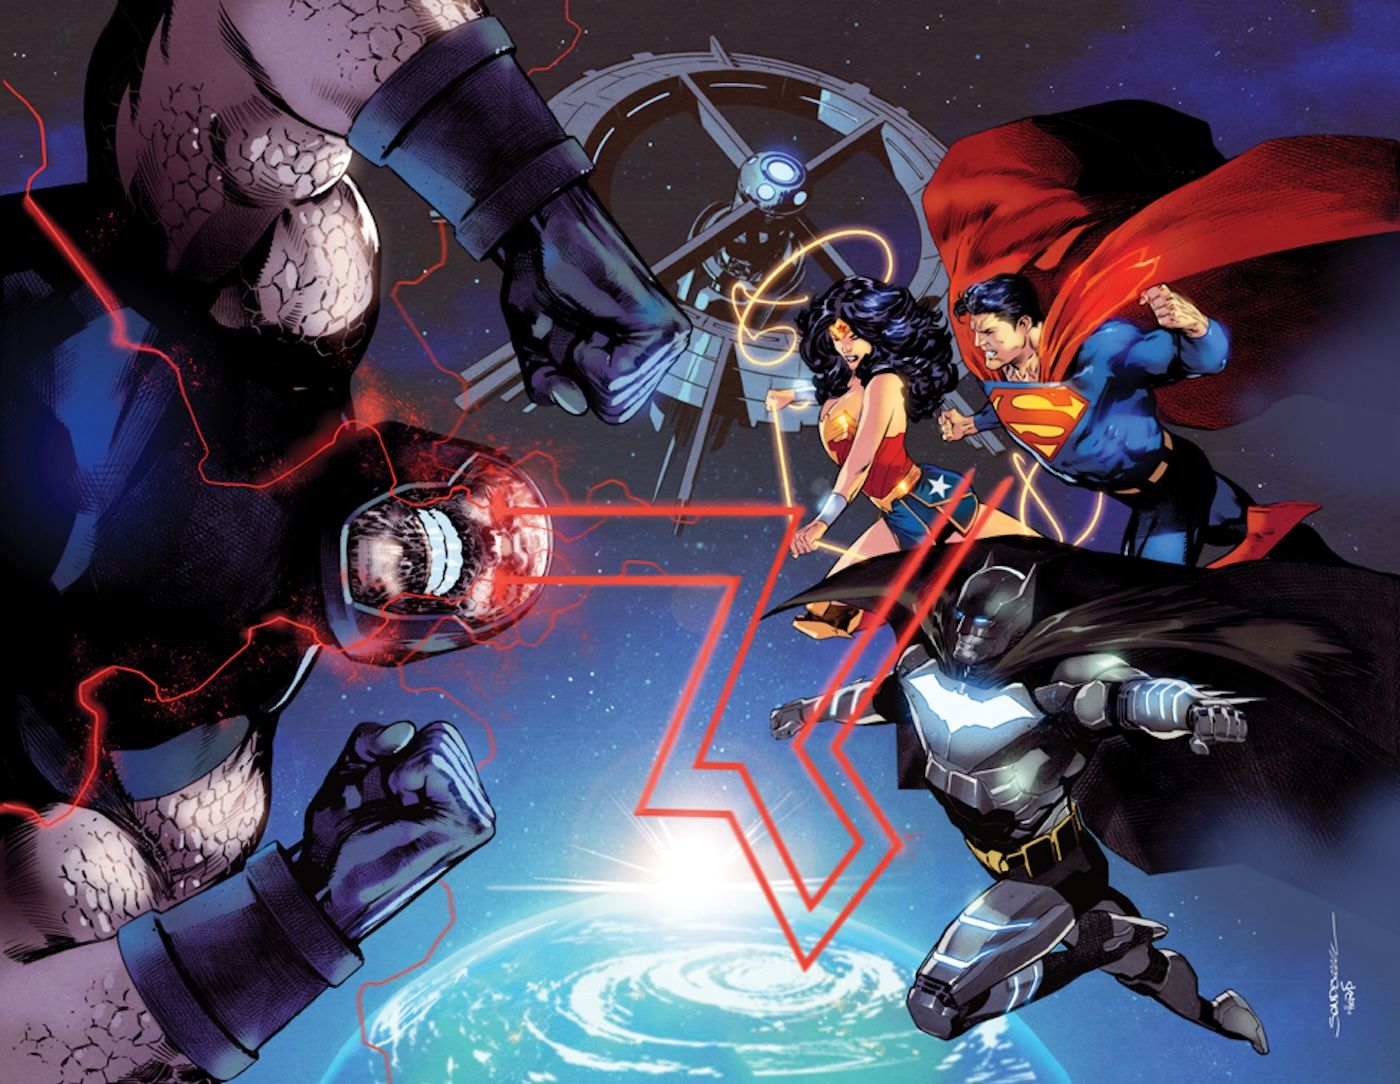 Capa da variante Sandoval do especial DC All In 1: Batman, Superman e Mulher-Maravilha atacam Darkseid no espaço.